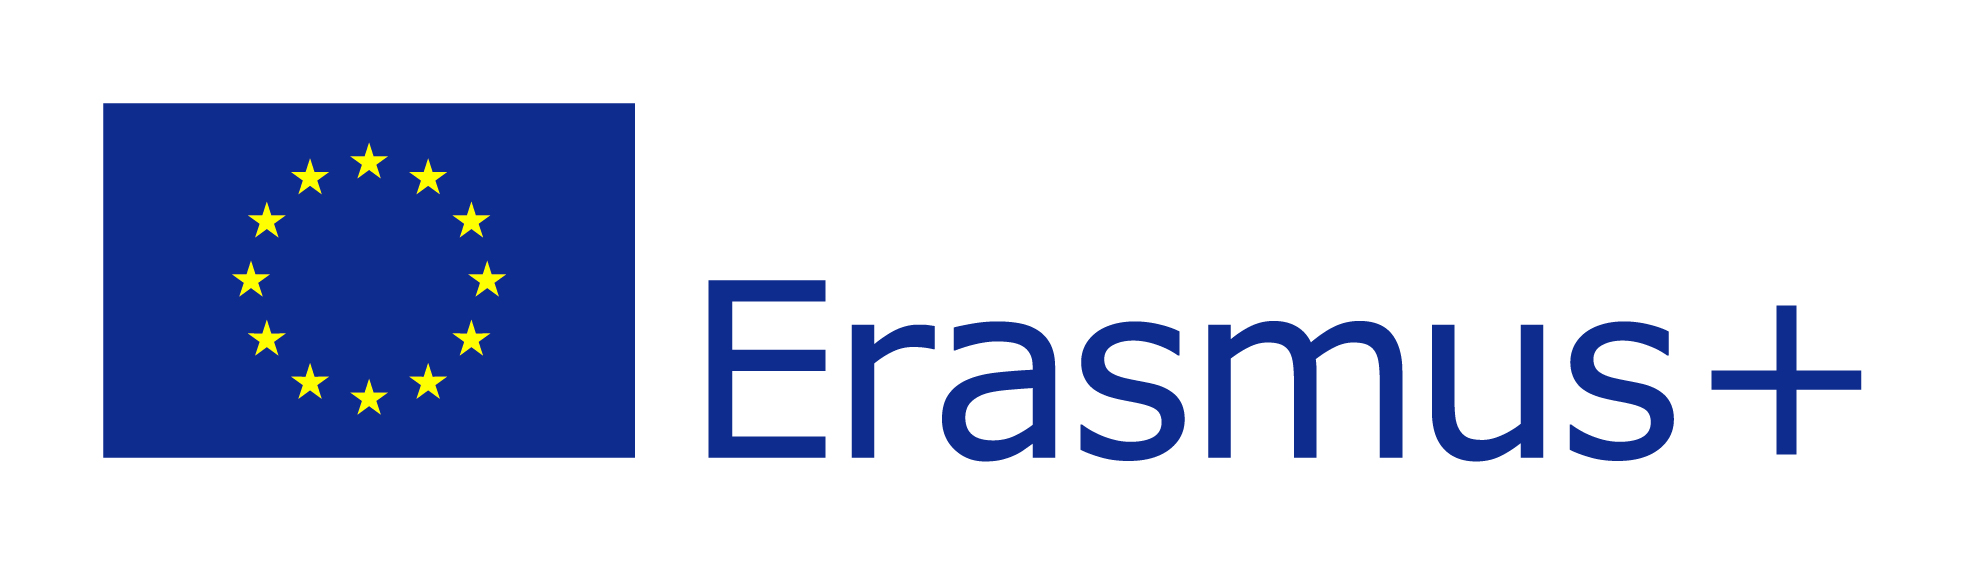 EU_Erasmus